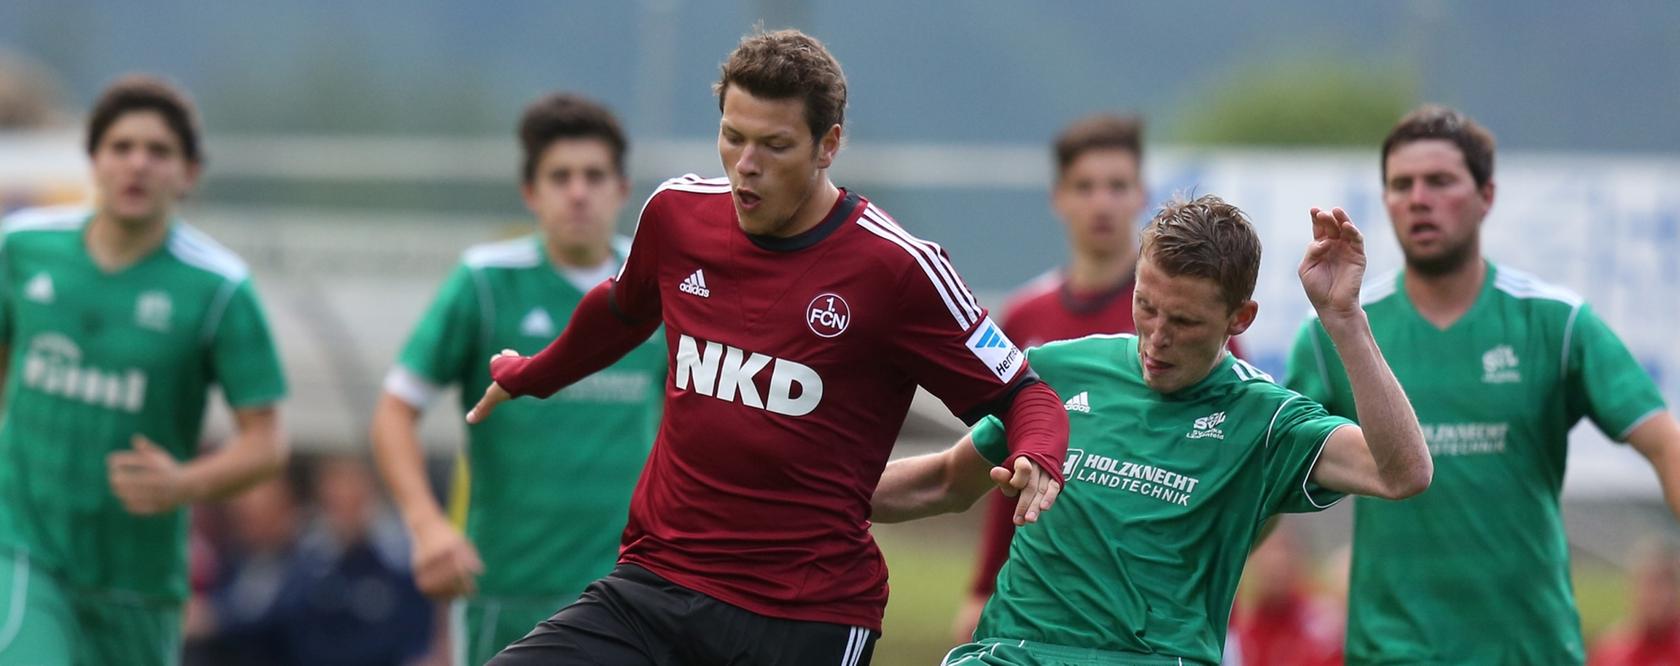 Der Club spielt wieder! Neuzugang Daniel Ginczek erzielte in der Saisonvorbereitung das erste Tor für den 1. FC Nürnberg.